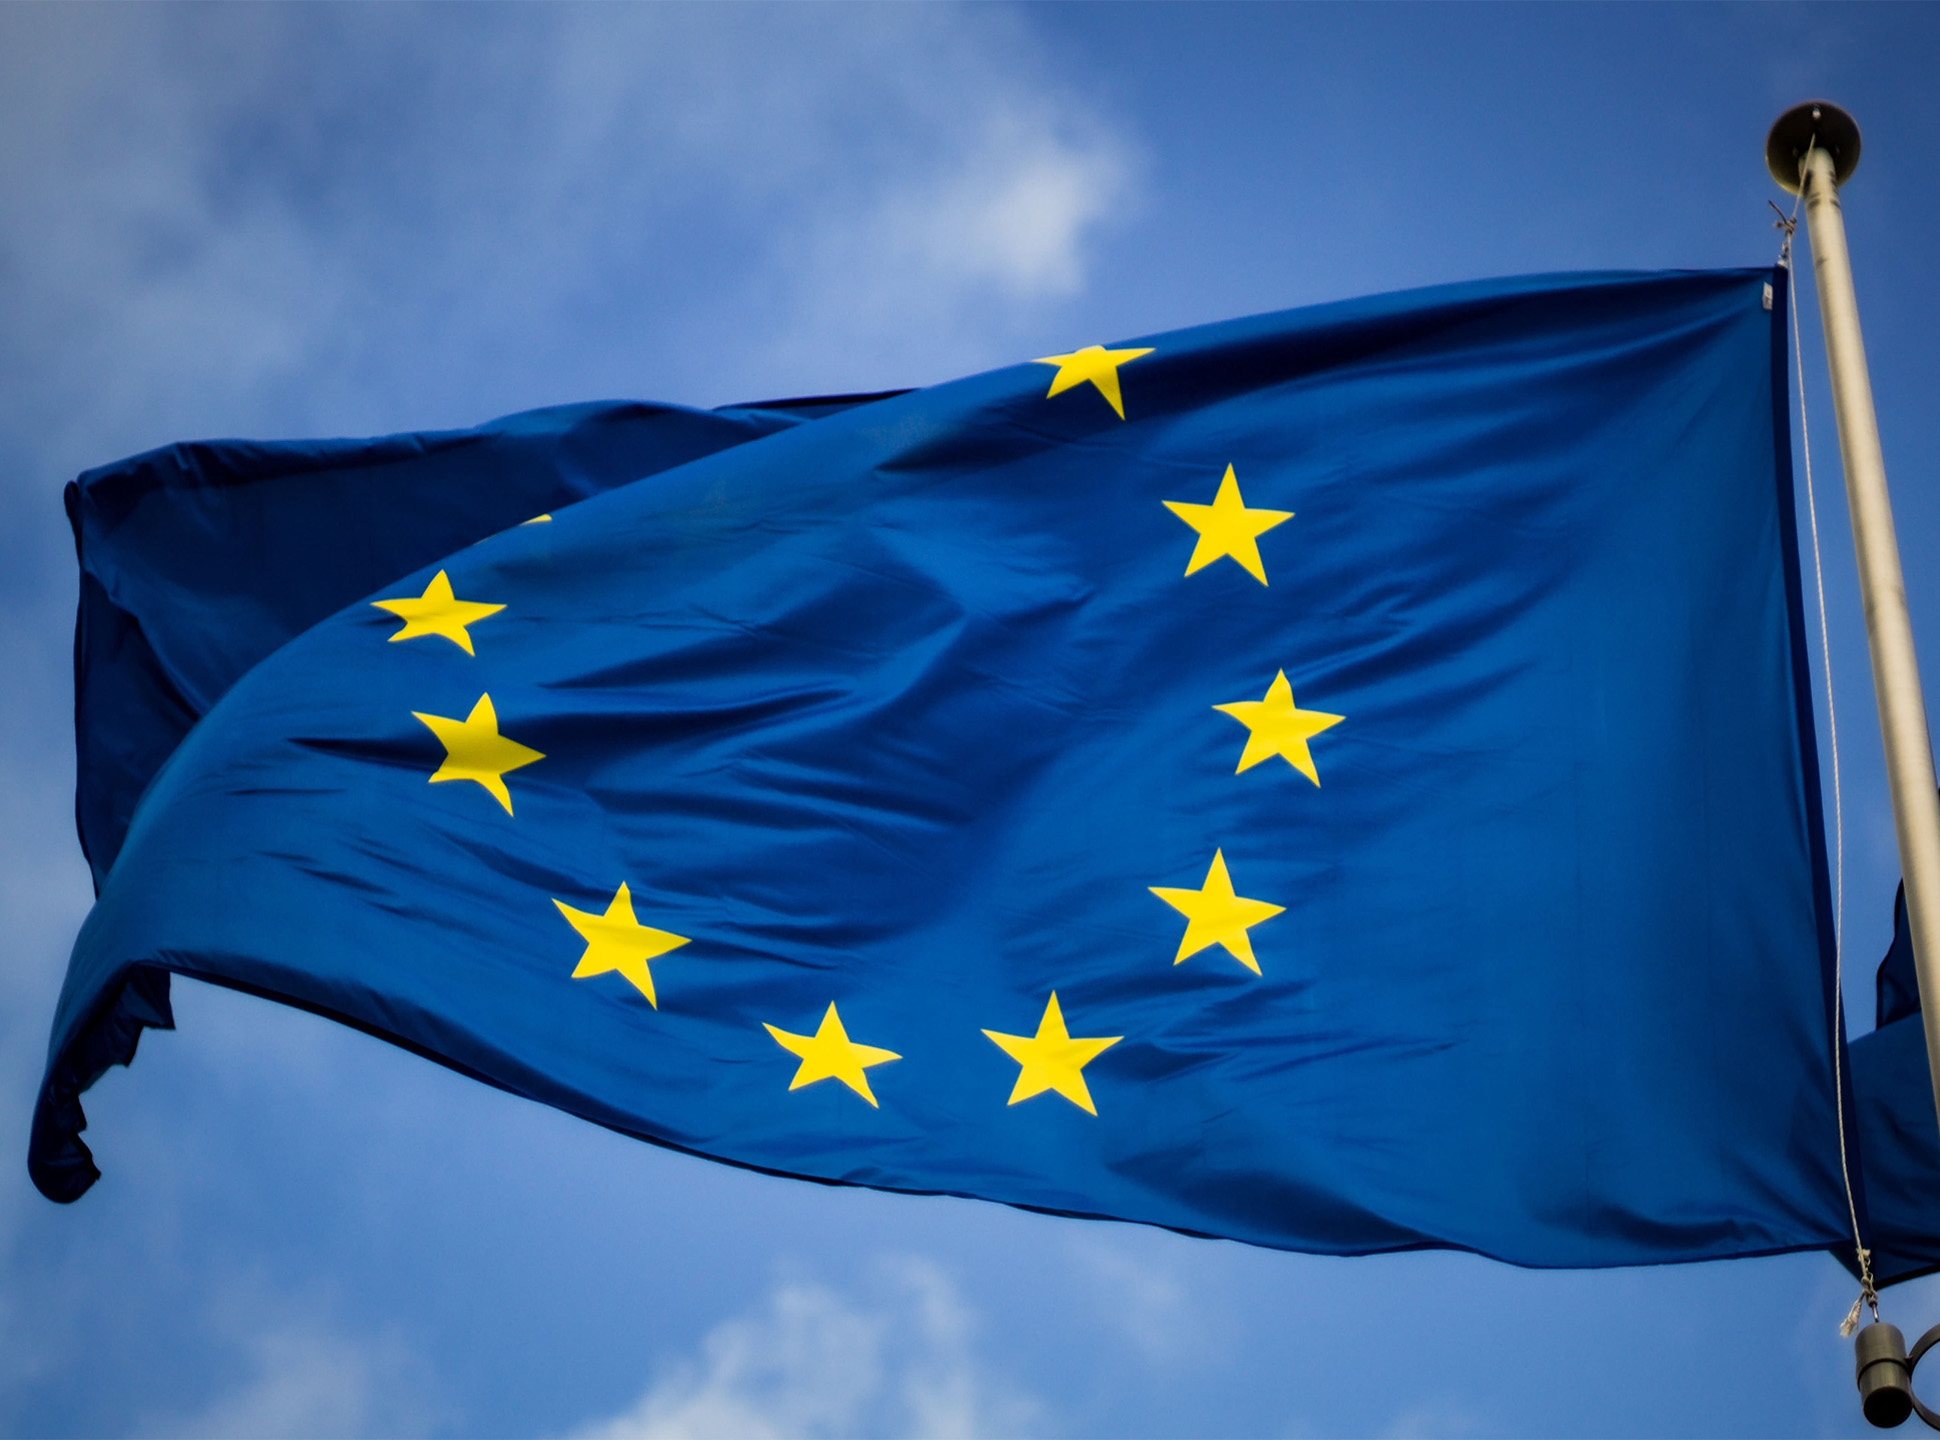 Flaga Unii Europejskiej (Niebieska flaga z żółtymi gwiazdami w kółku) powiewa na wietrze.